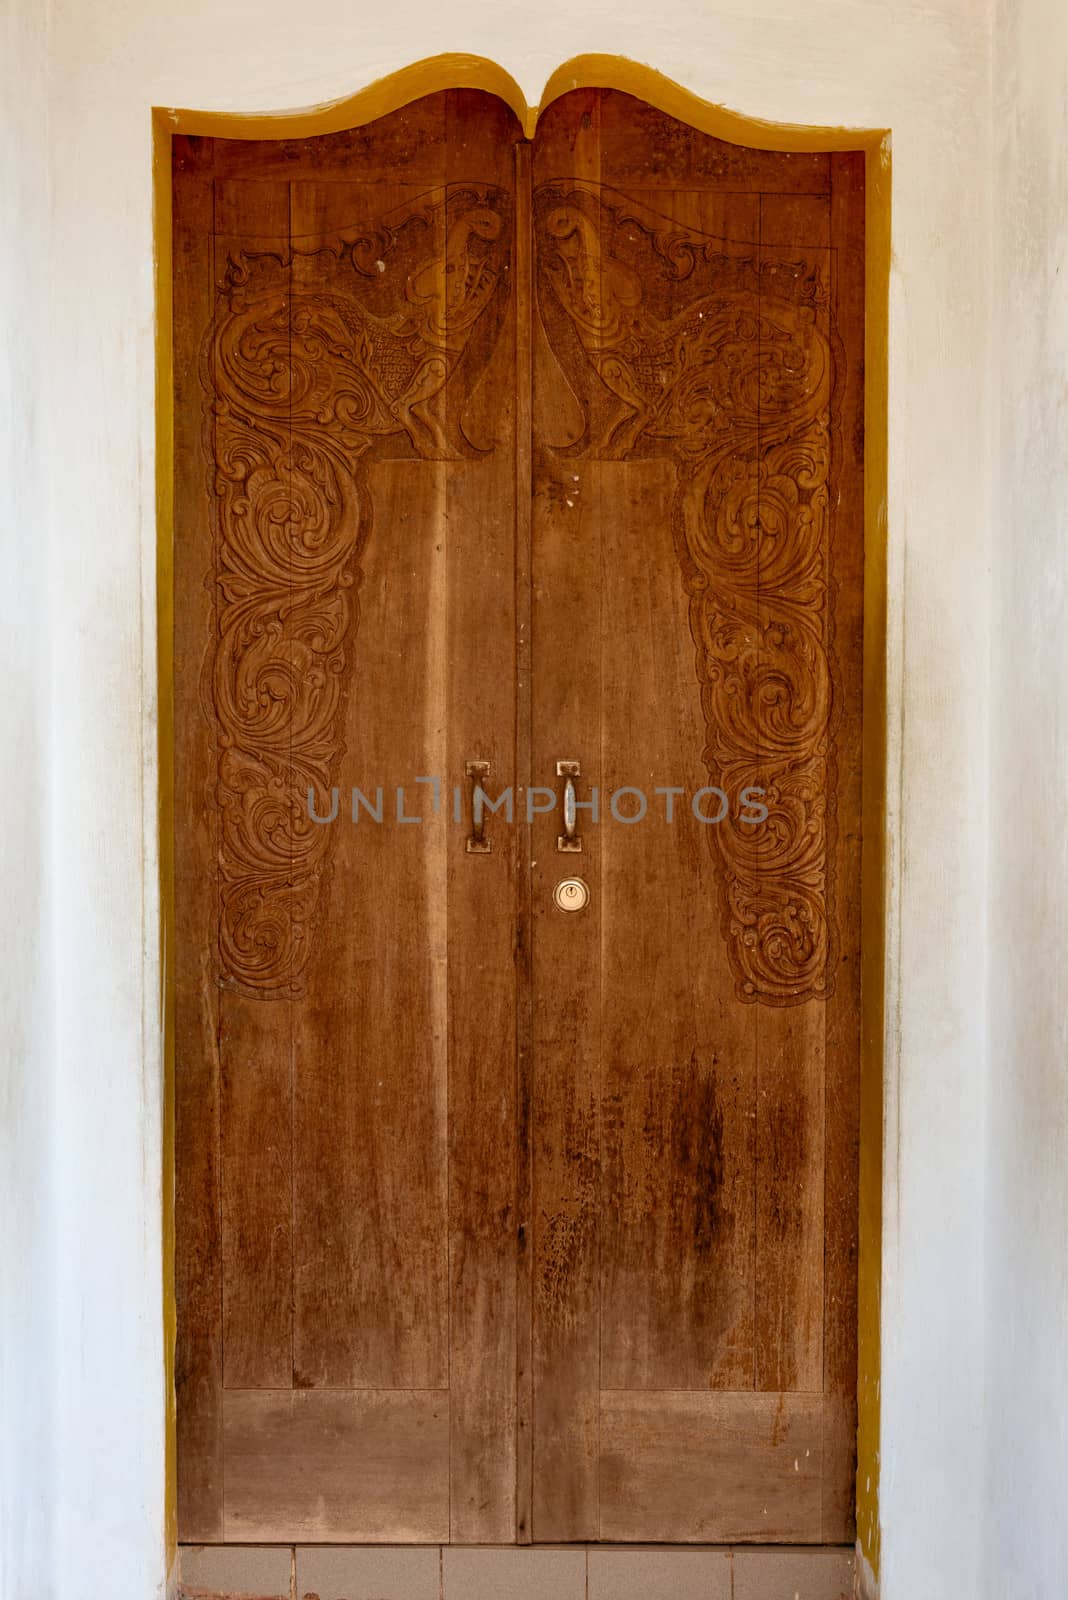 Old grunge wooden door by iryna_rasko